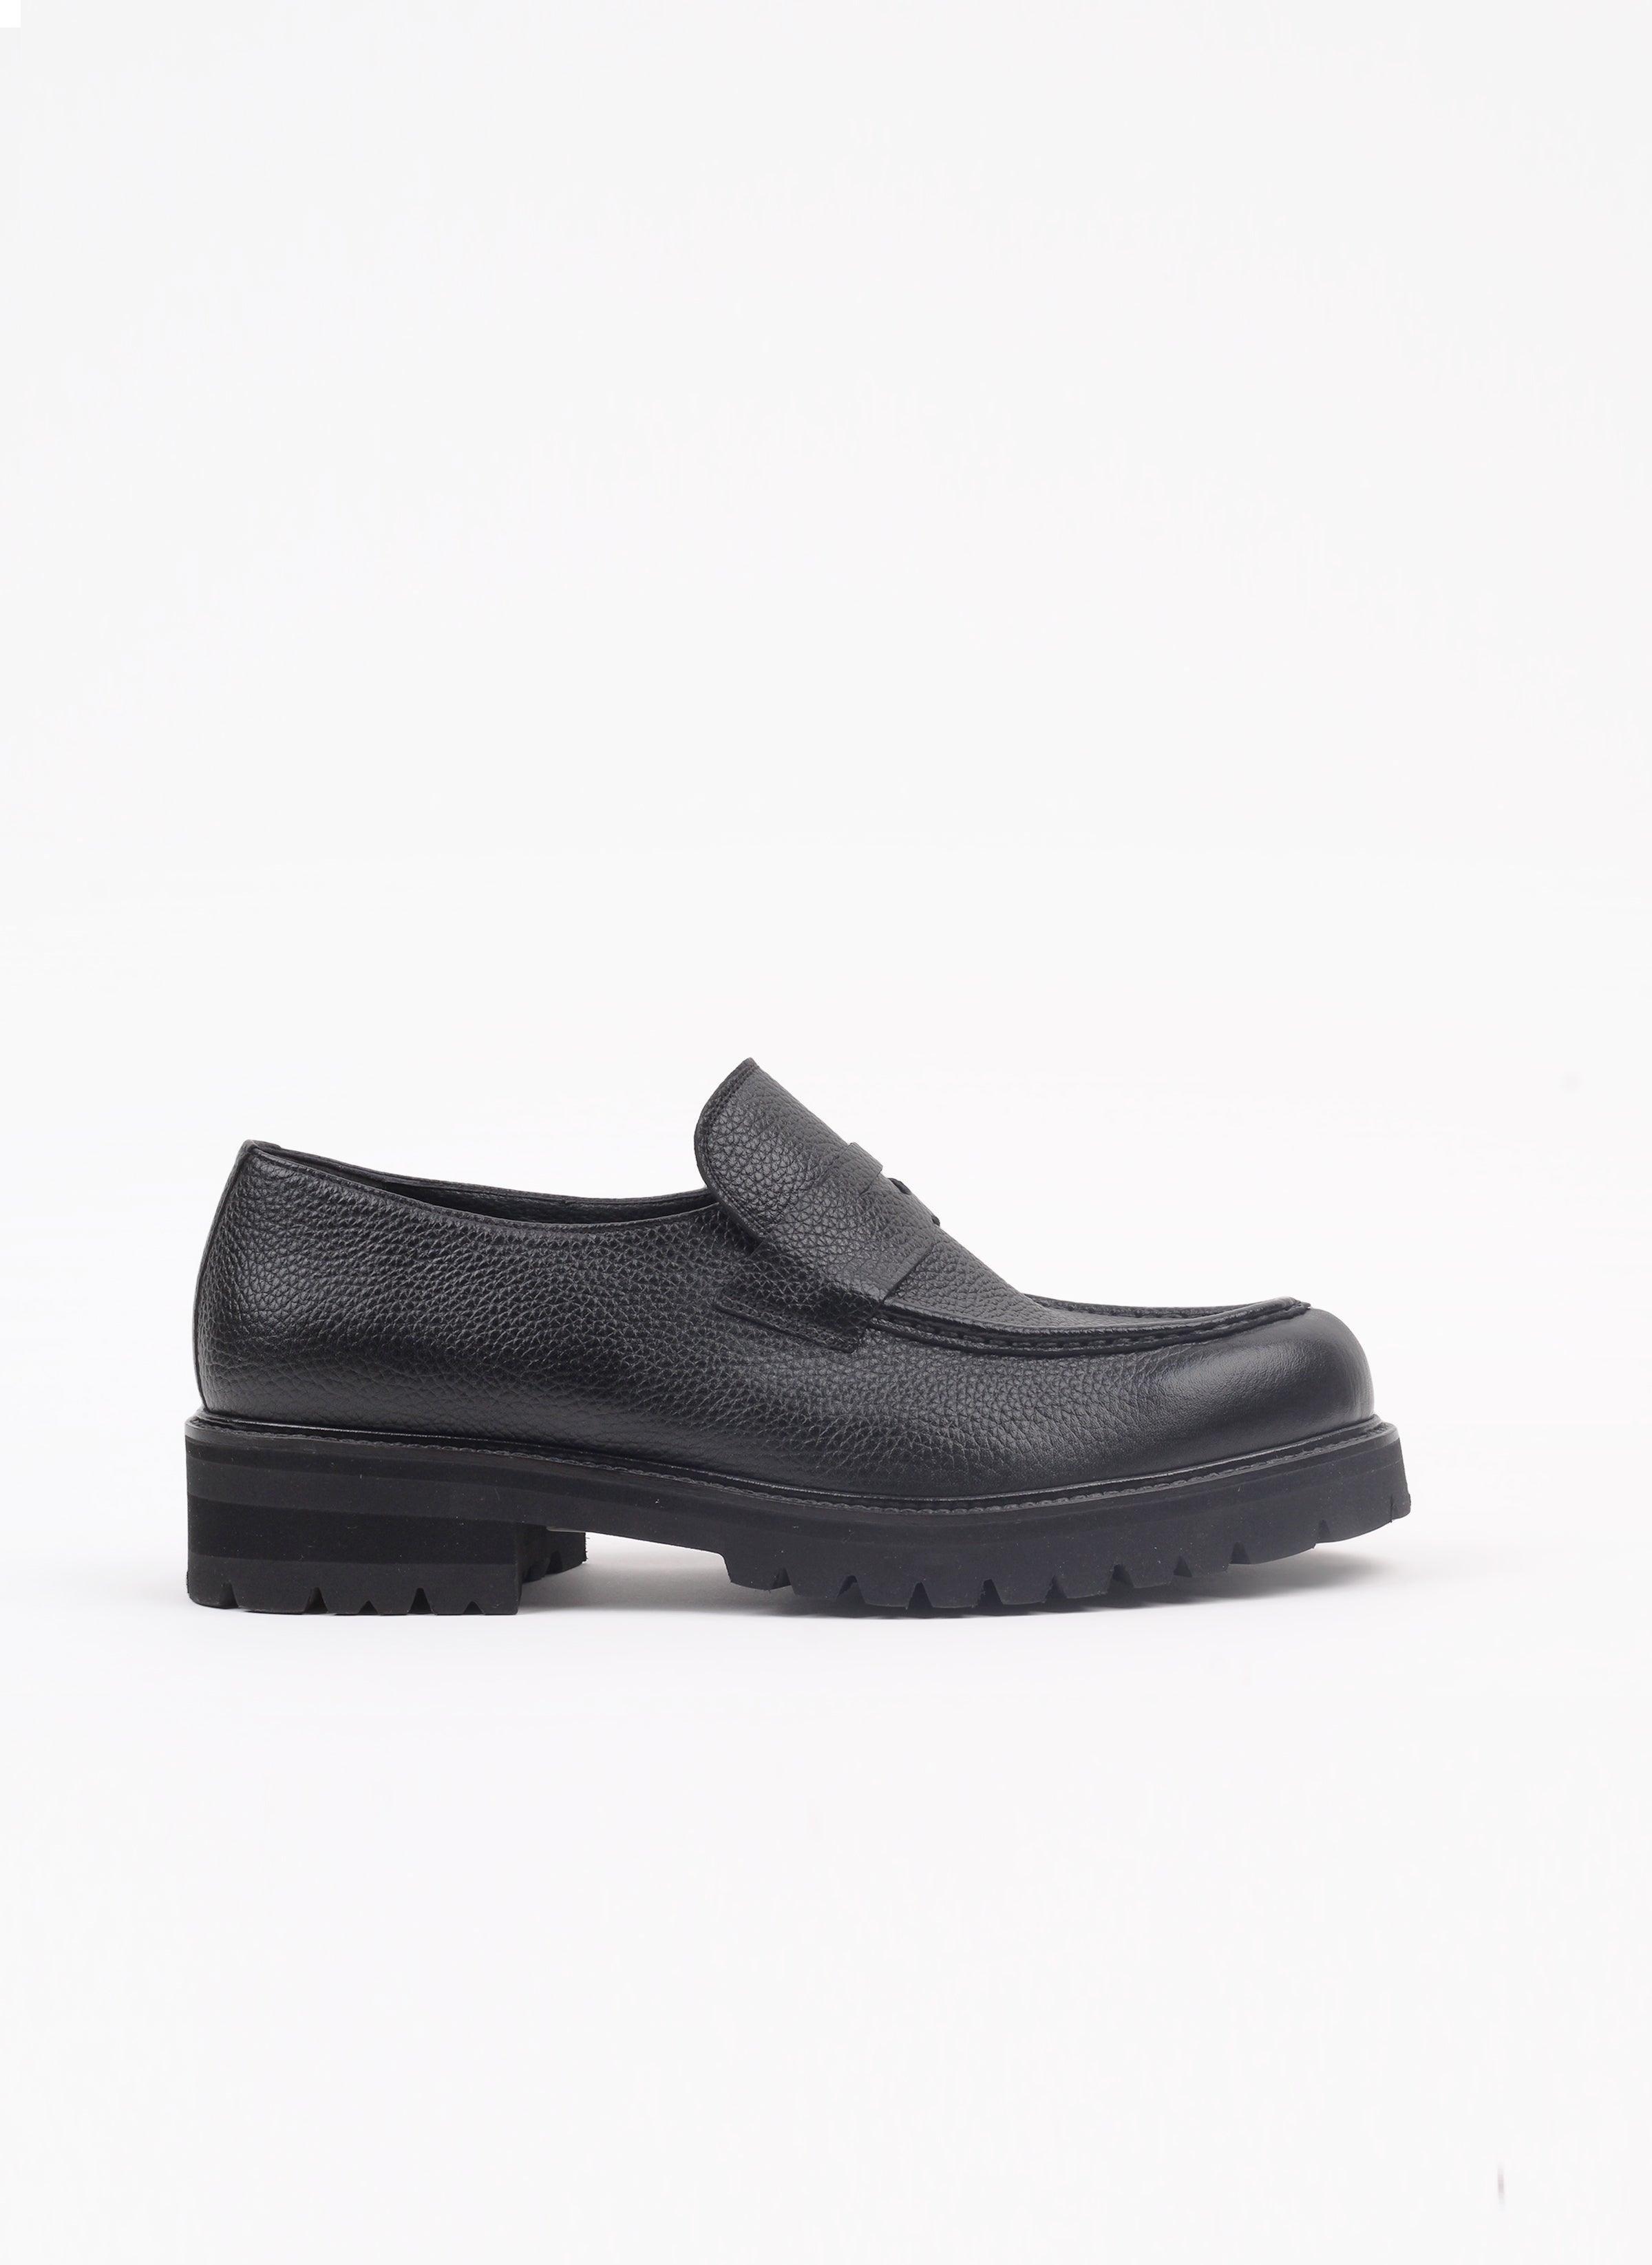 Siyah Segova Geyik Baskı Deri Loafer Ayakkabı - Oggi Shoes